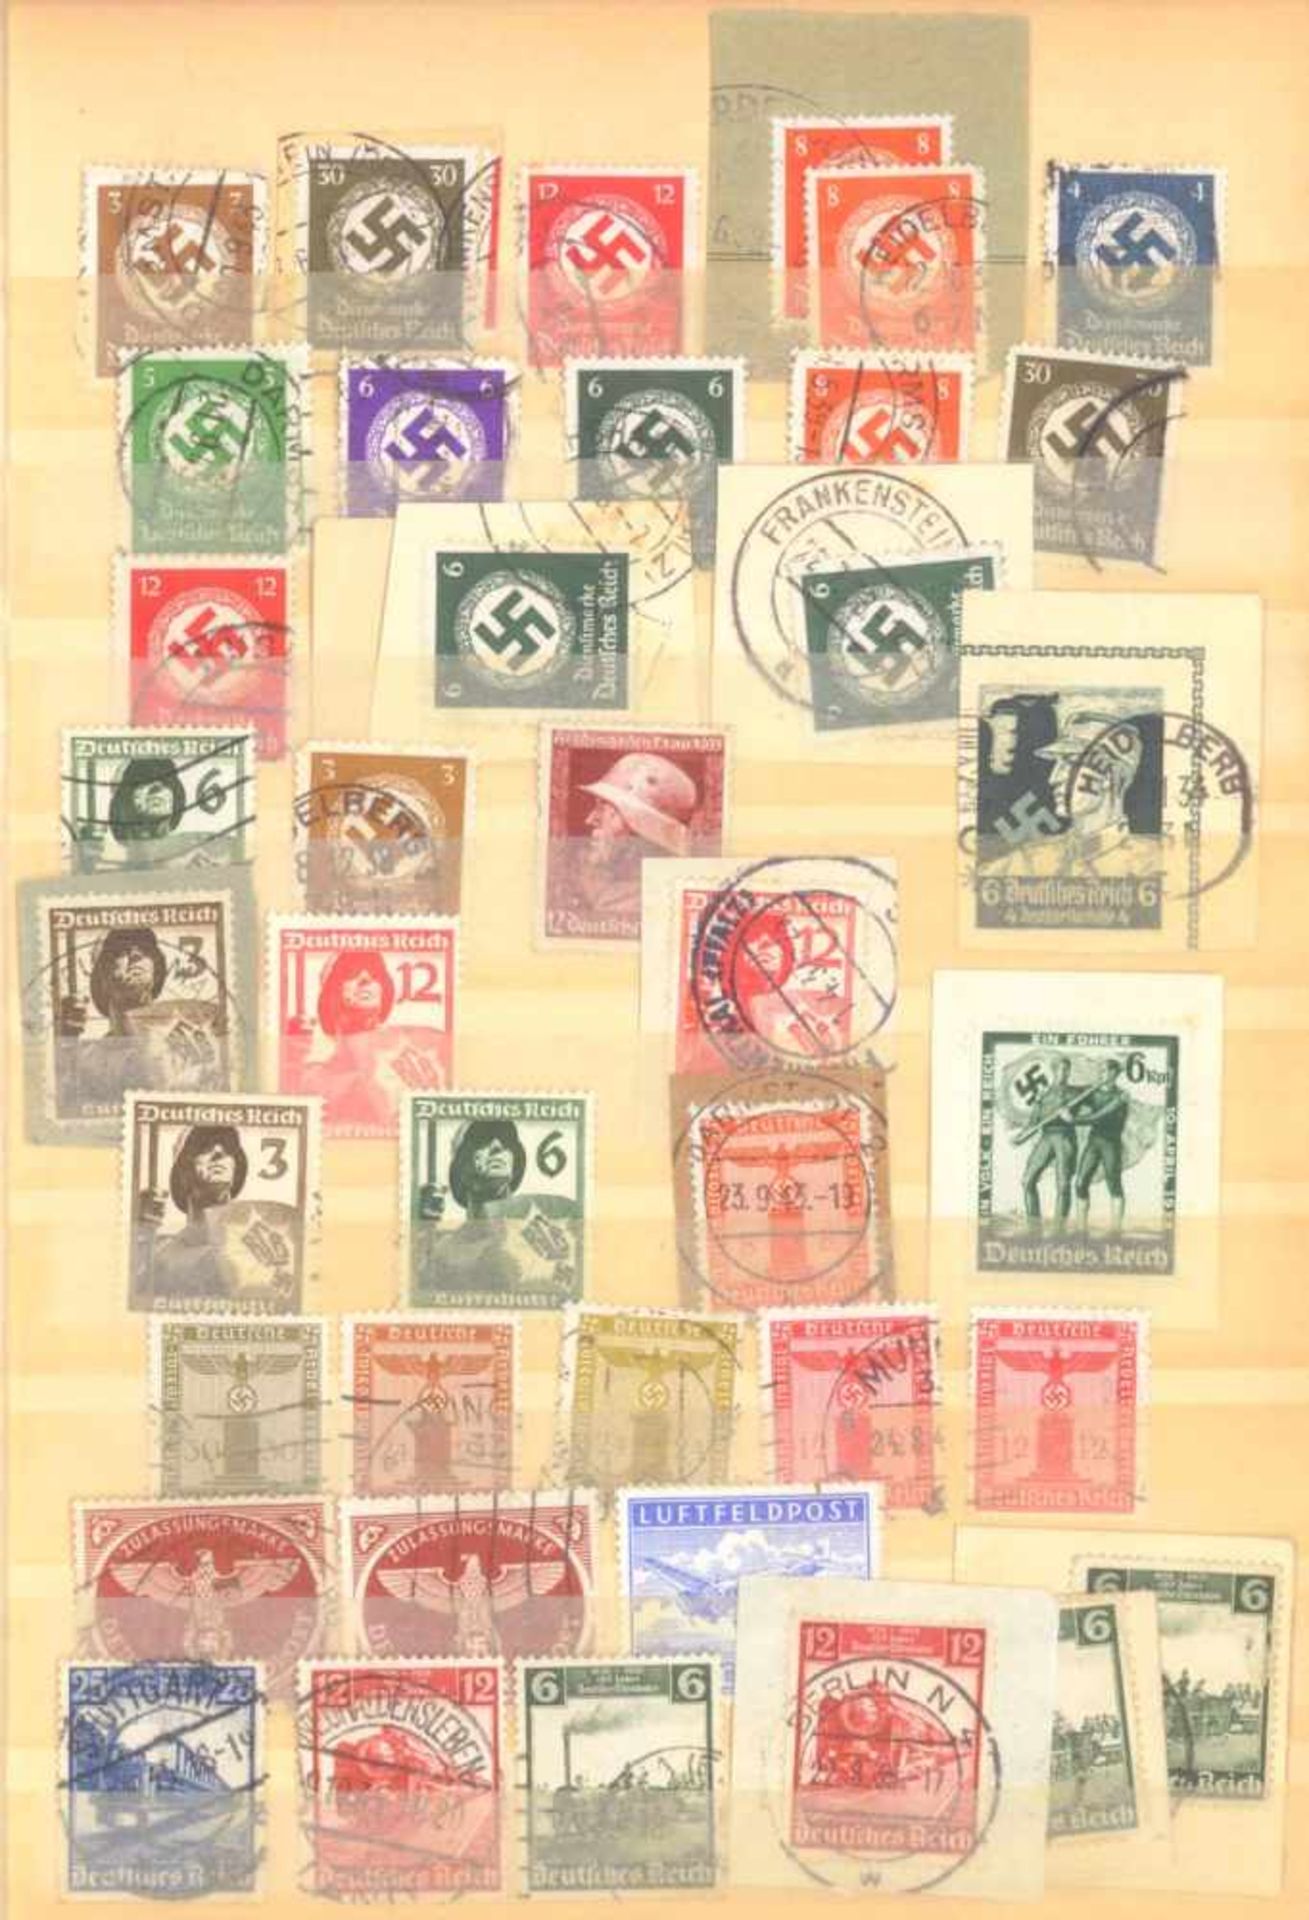 FRANKENTHALER NACHLASSuriger Nachlass mit Briefmarken und Belegen. Dabei DeutschesReich, altes - Bild 19 aus 46